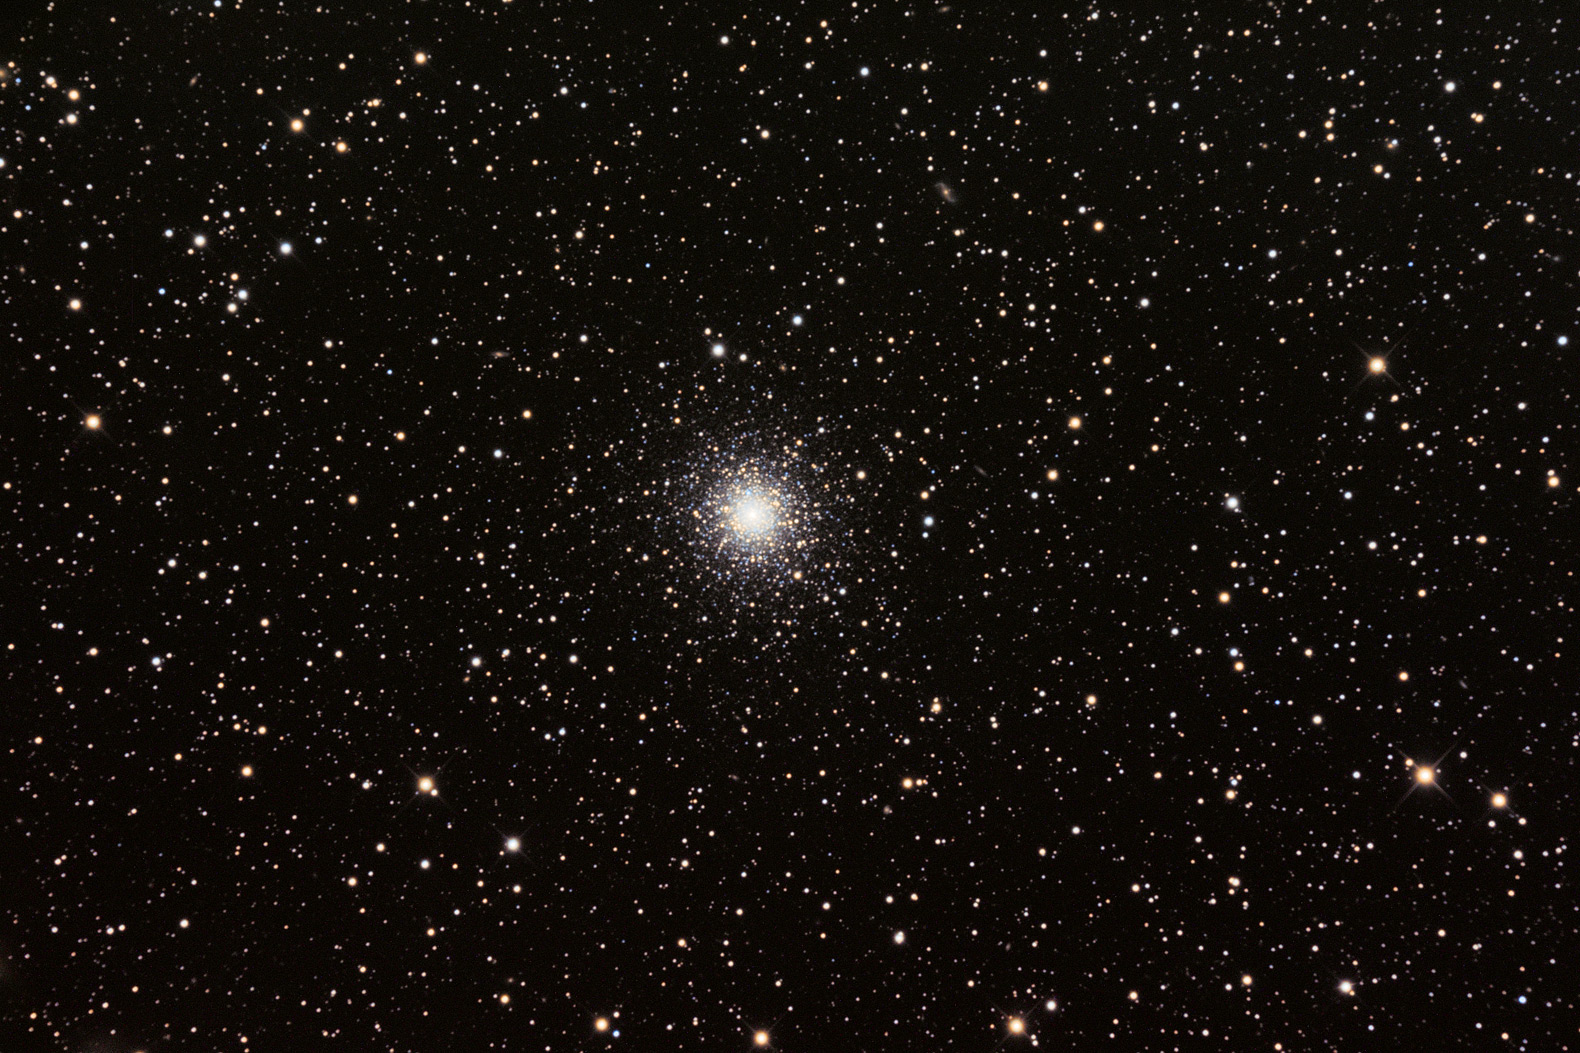 NGC 5824